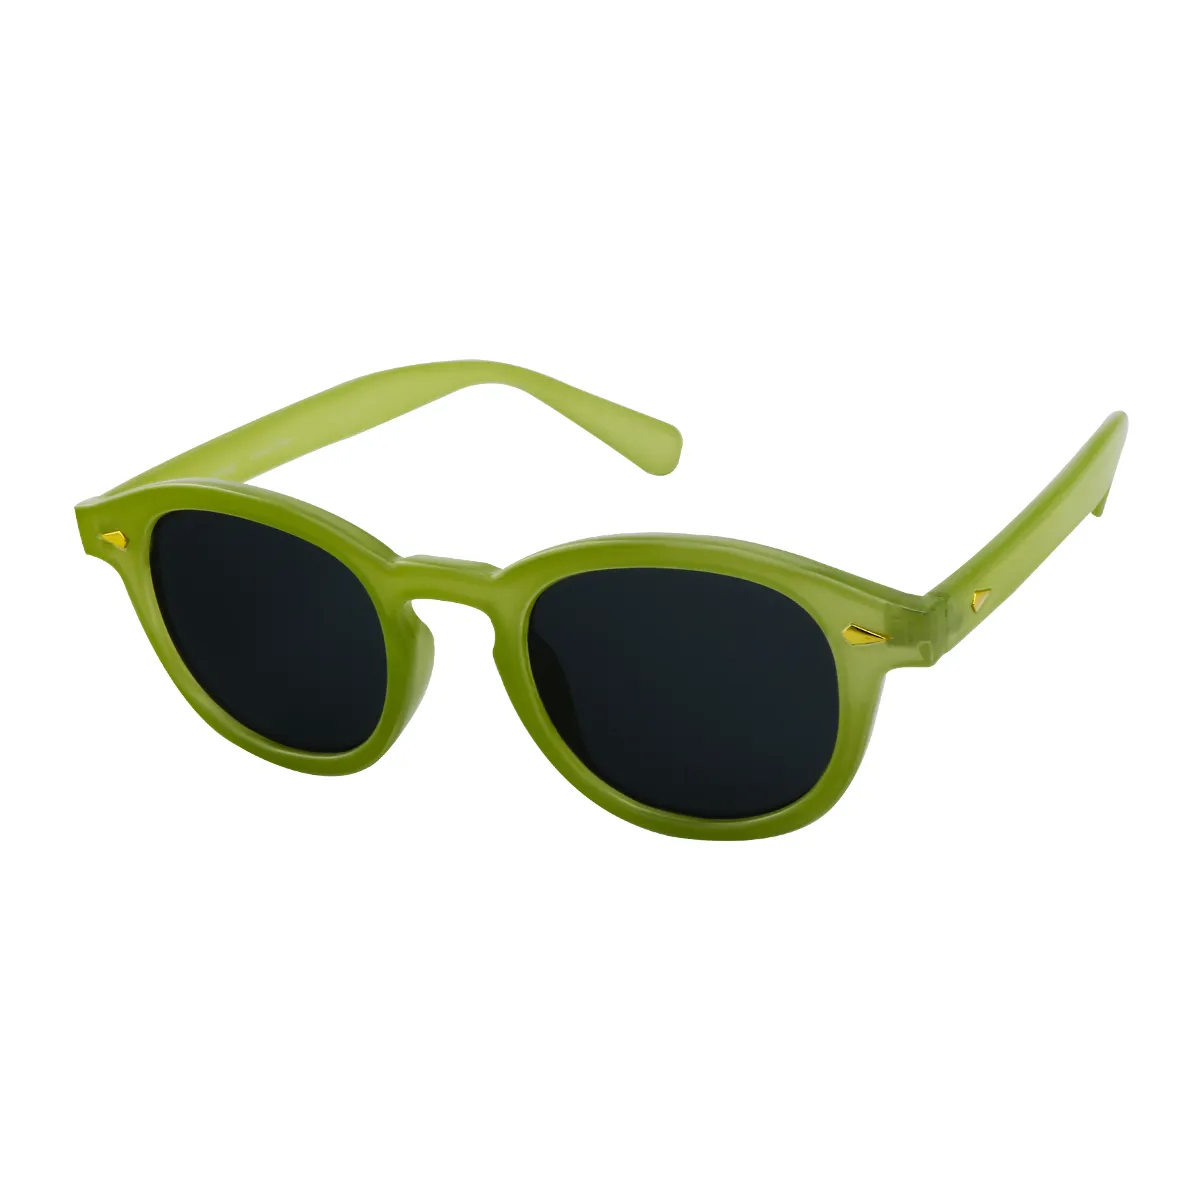 Neutral -  Green Sunglasses for Men & Women